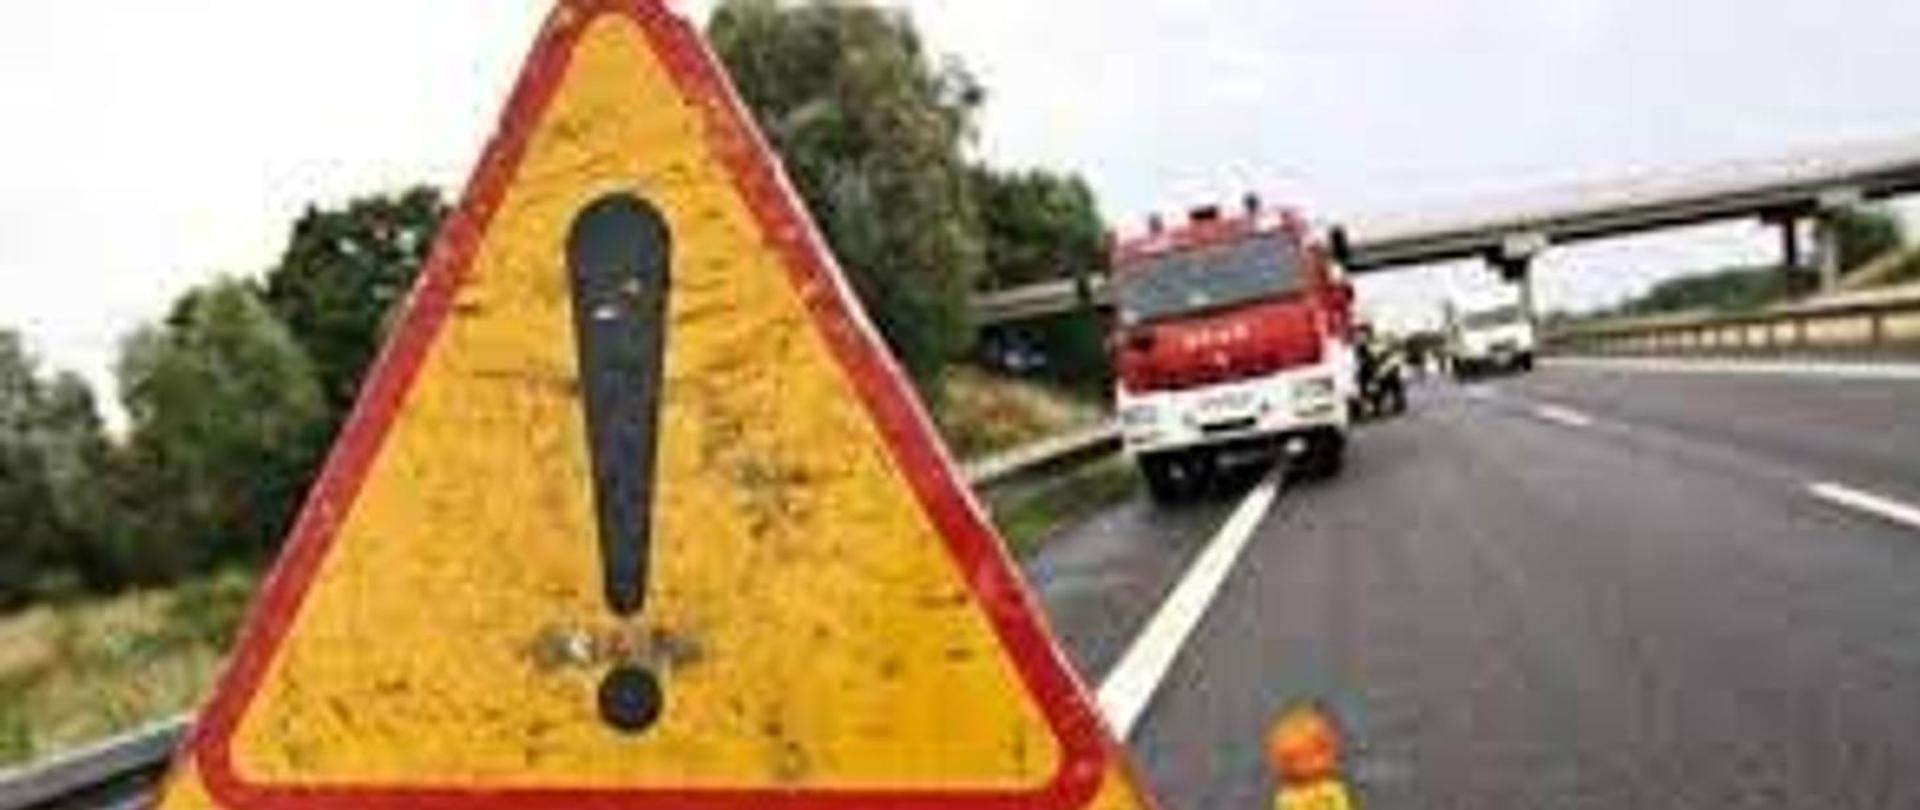 Zdjęcie obrazuje wypadek drogowy i jego oznakowanie podczas pracy służb ratowniczych